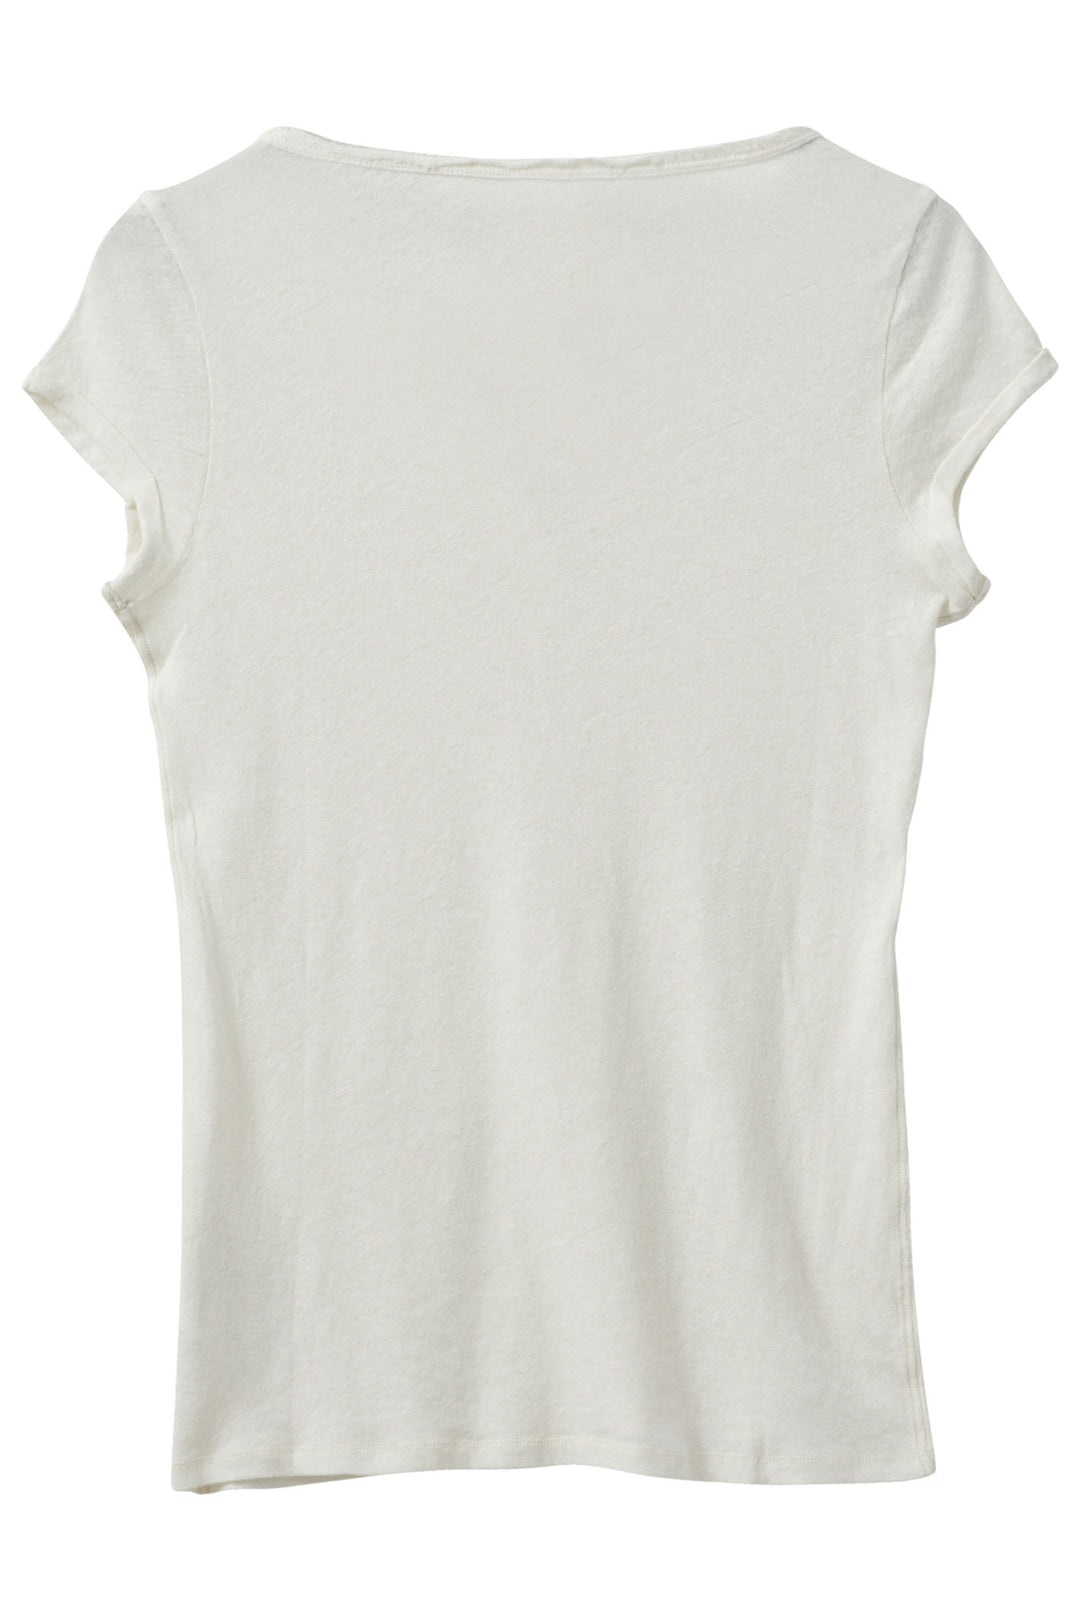 Mos Mosh 133020 MMTroy Ecru Cream Linen Blend Roll Sleeve T-Shirt - Dotique